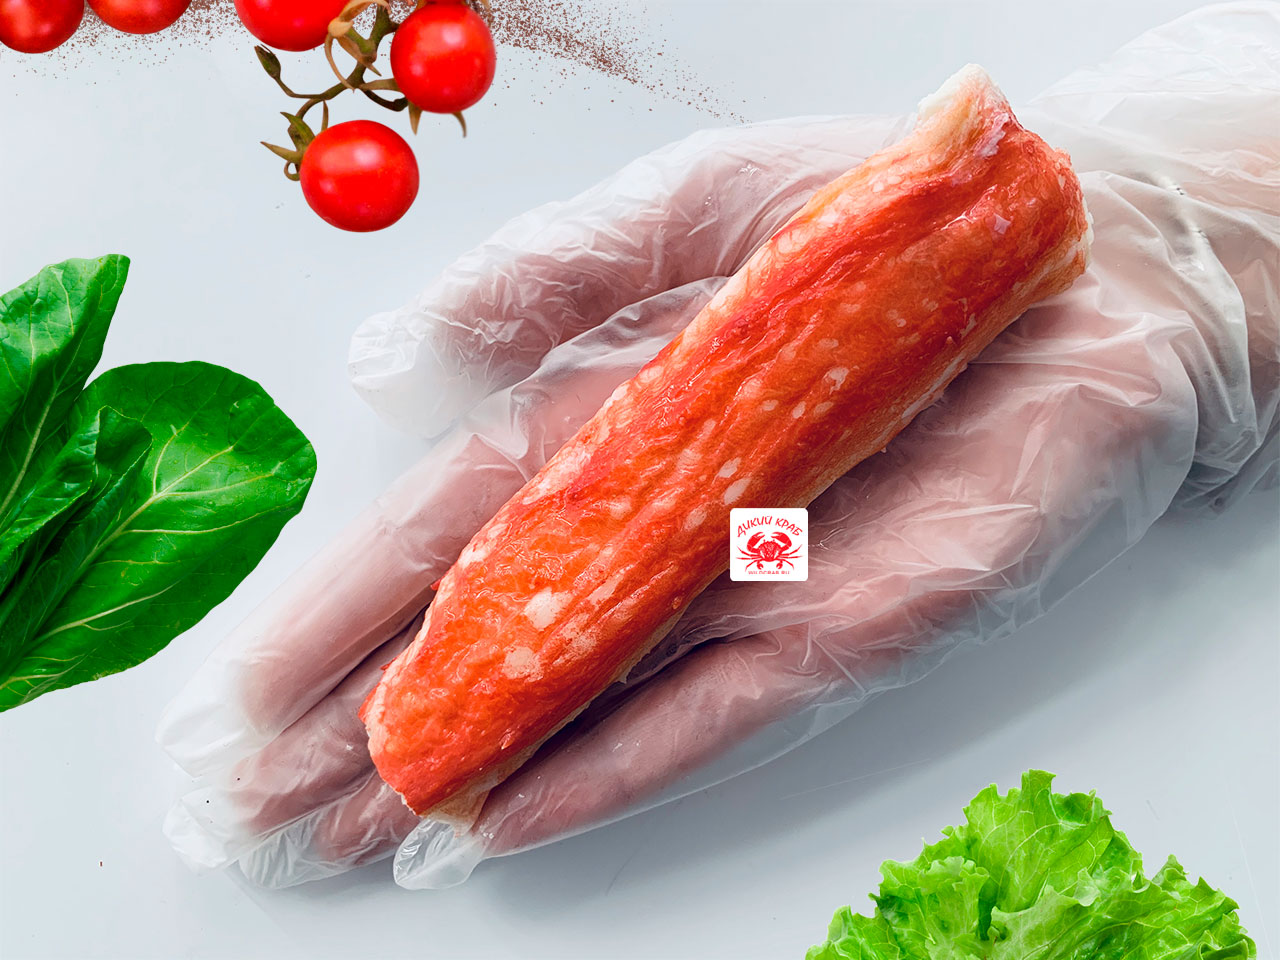 Первая фаланга Камчатского краба очищенная, средняя 9-12 см (мясо краба сухой заморозки) 0,5 кг